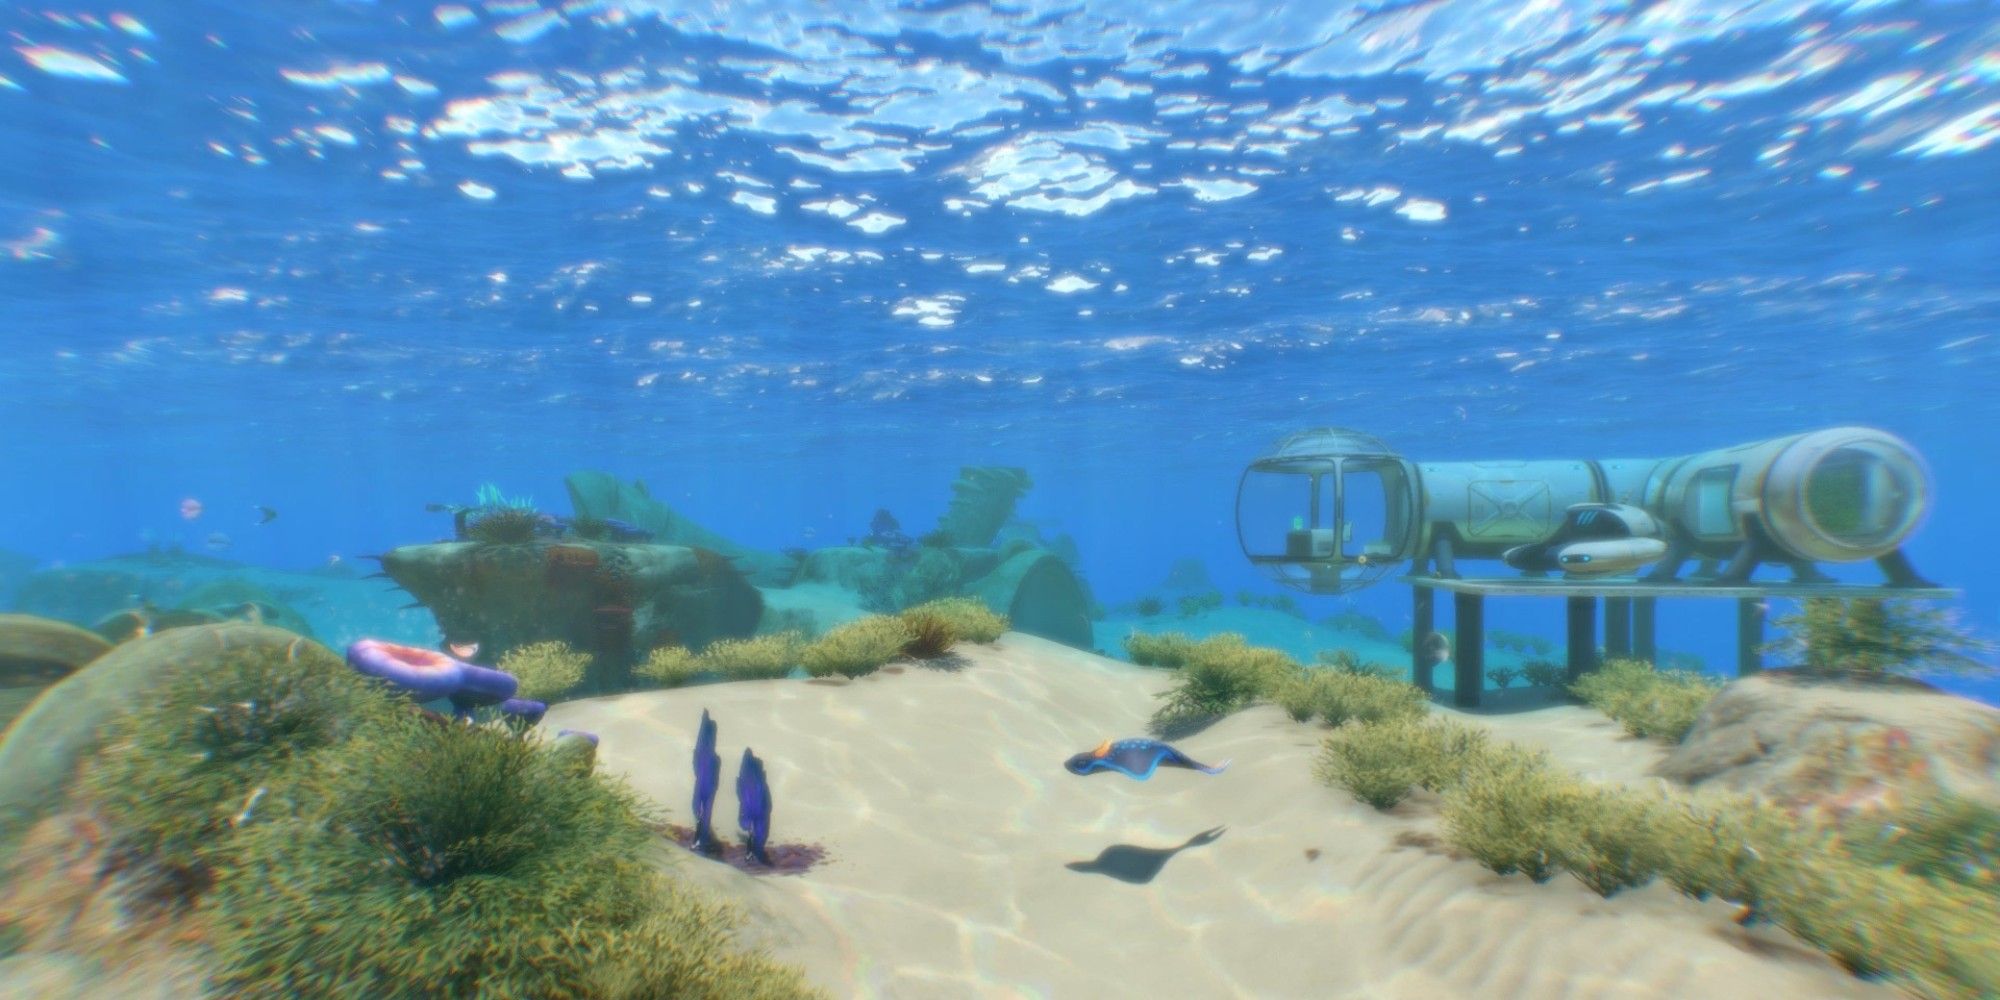 subnautica underwater scene